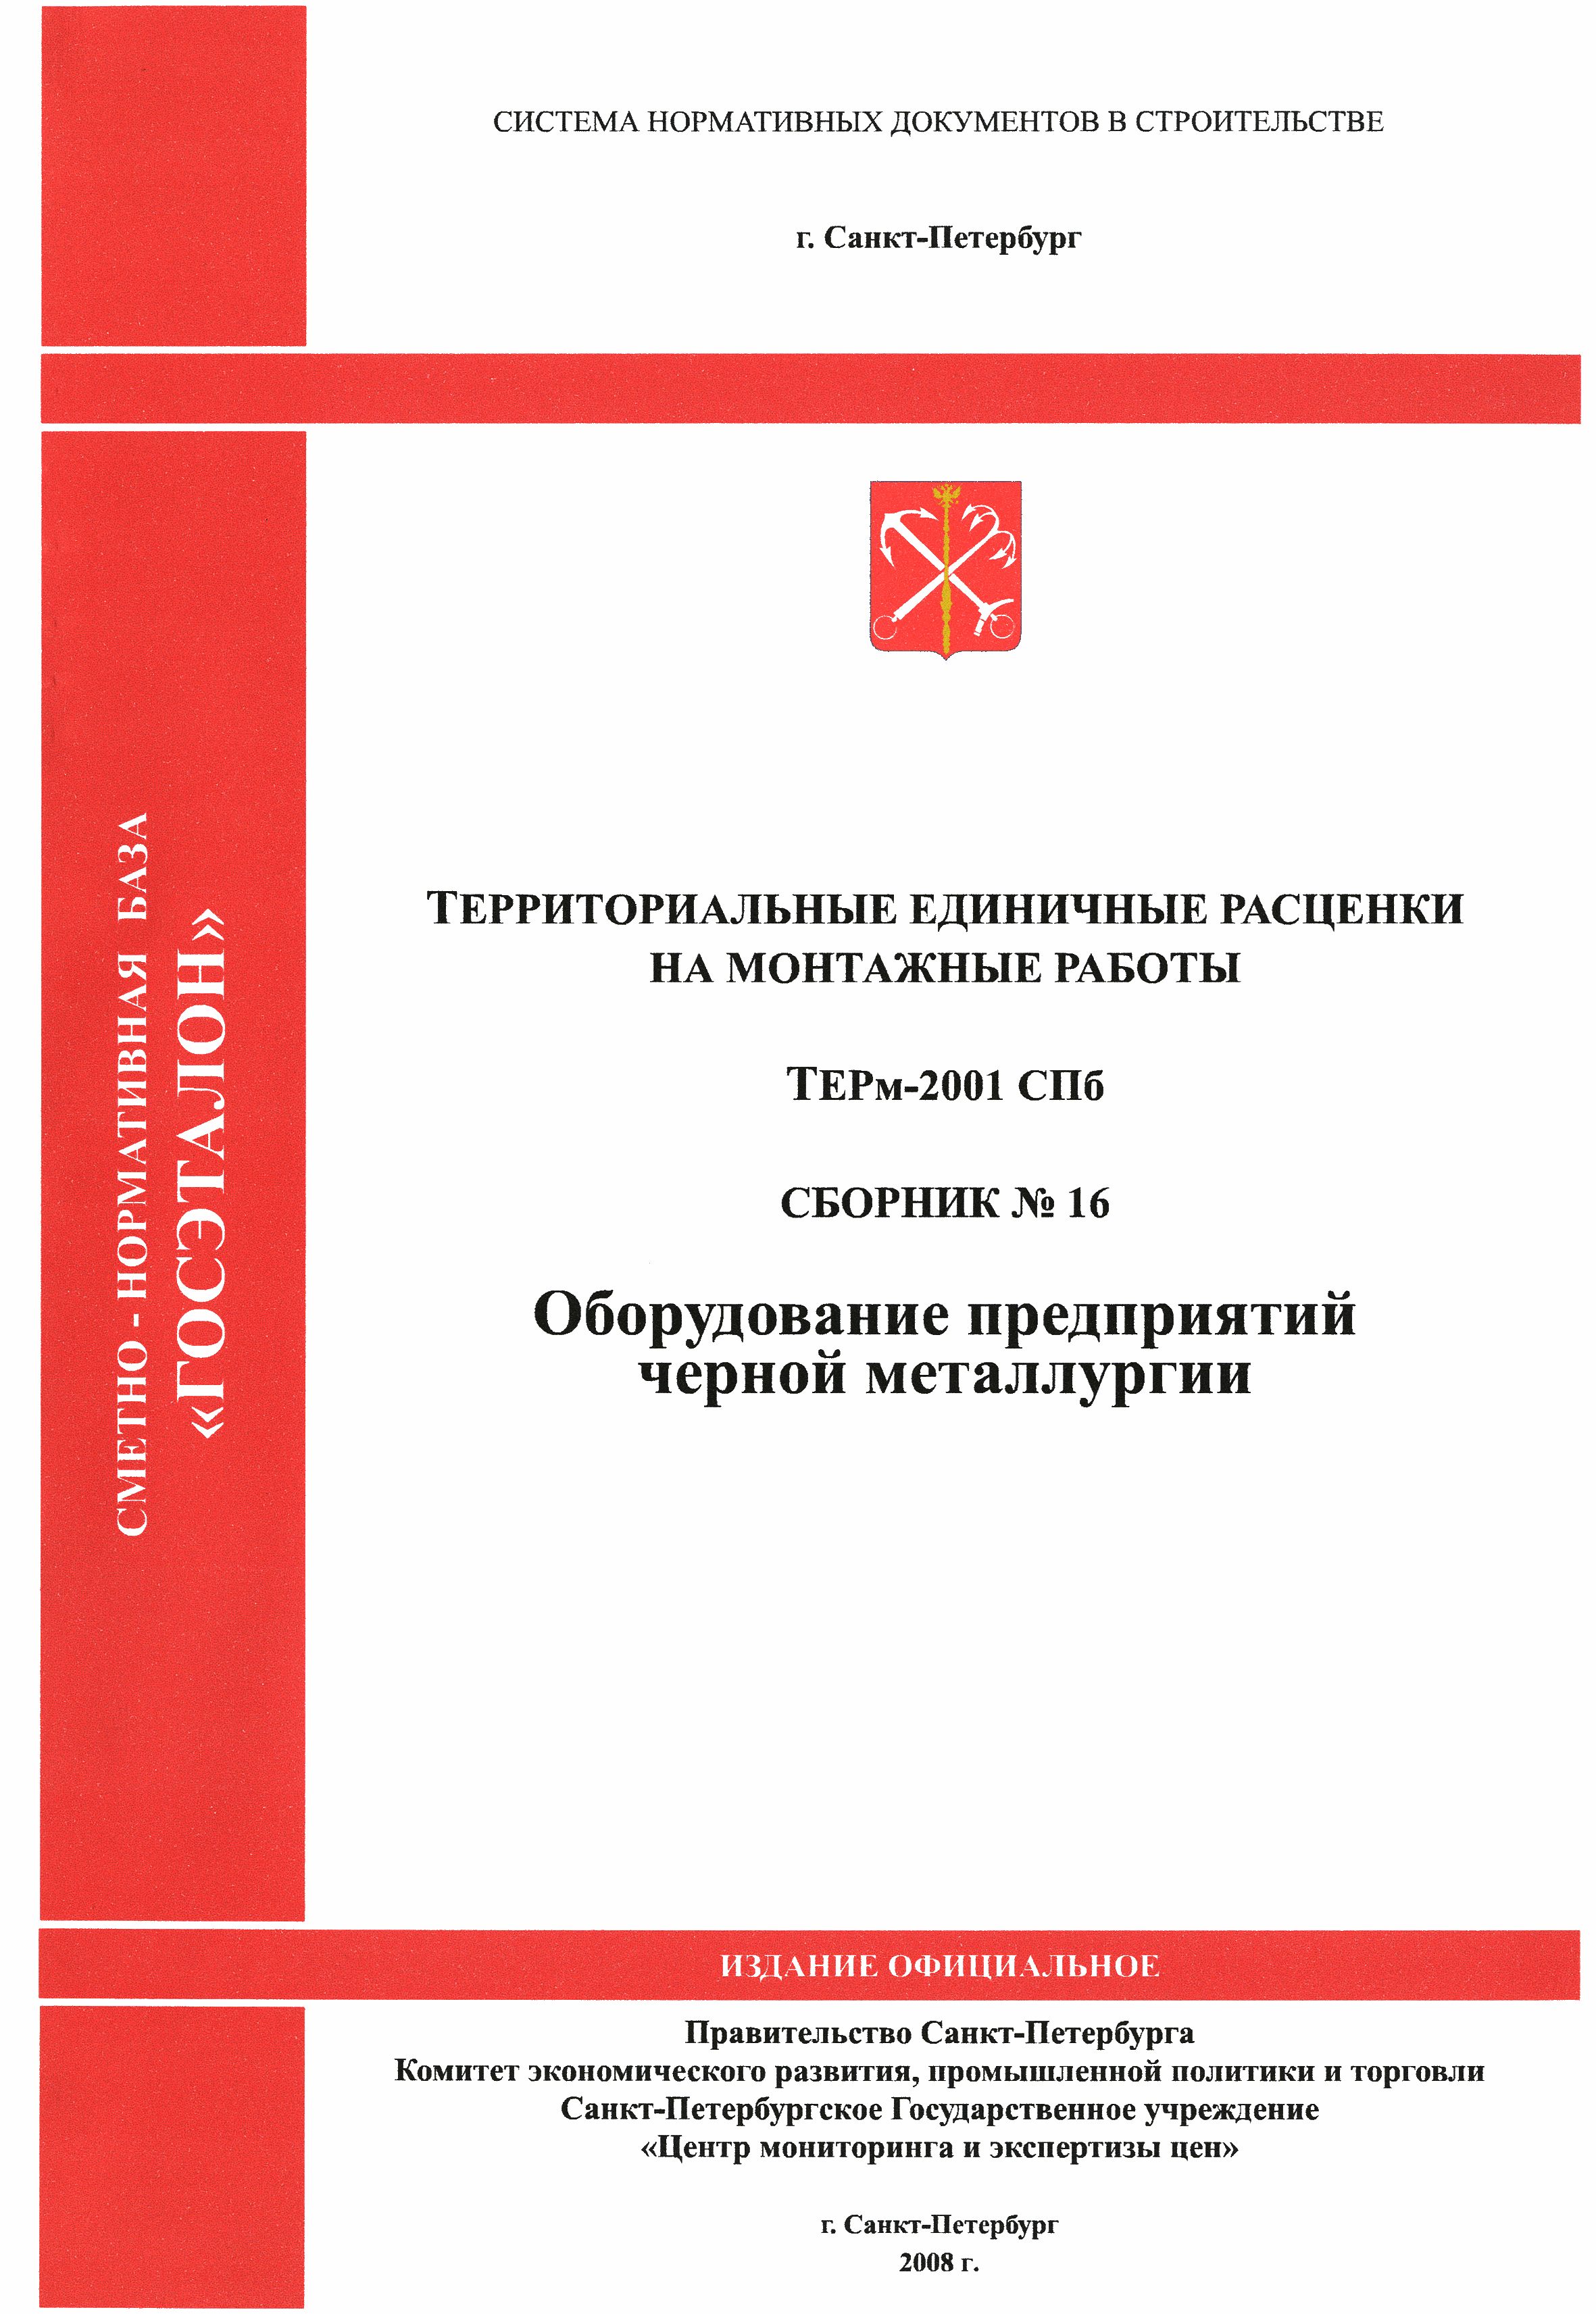 ТЕРм 2001-16 СПб